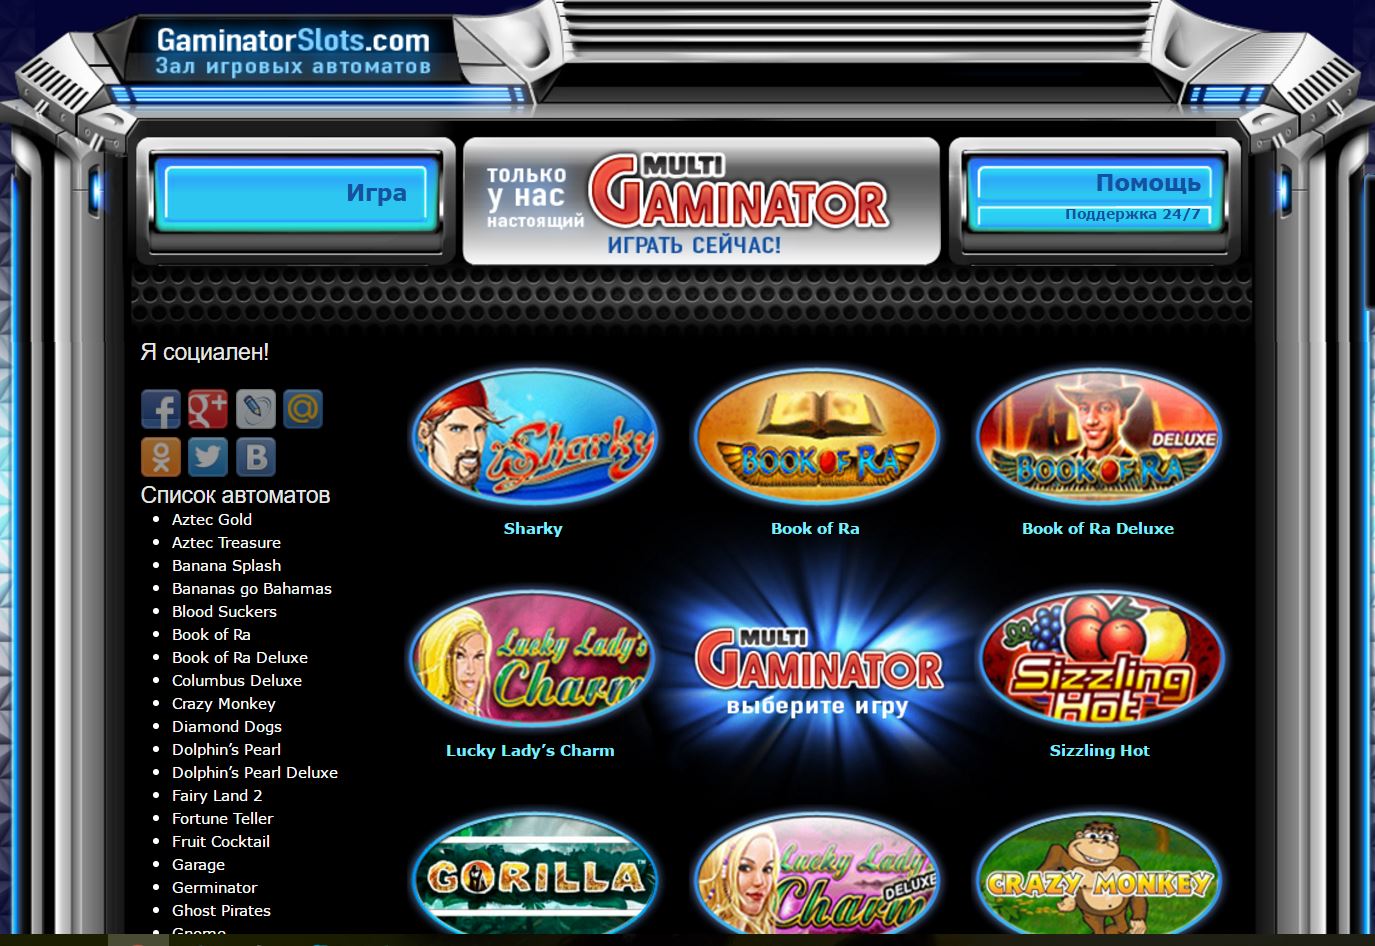 Гейминаторы - Игровые автоматы гаминатор онлайн - Novomatic Gaminator